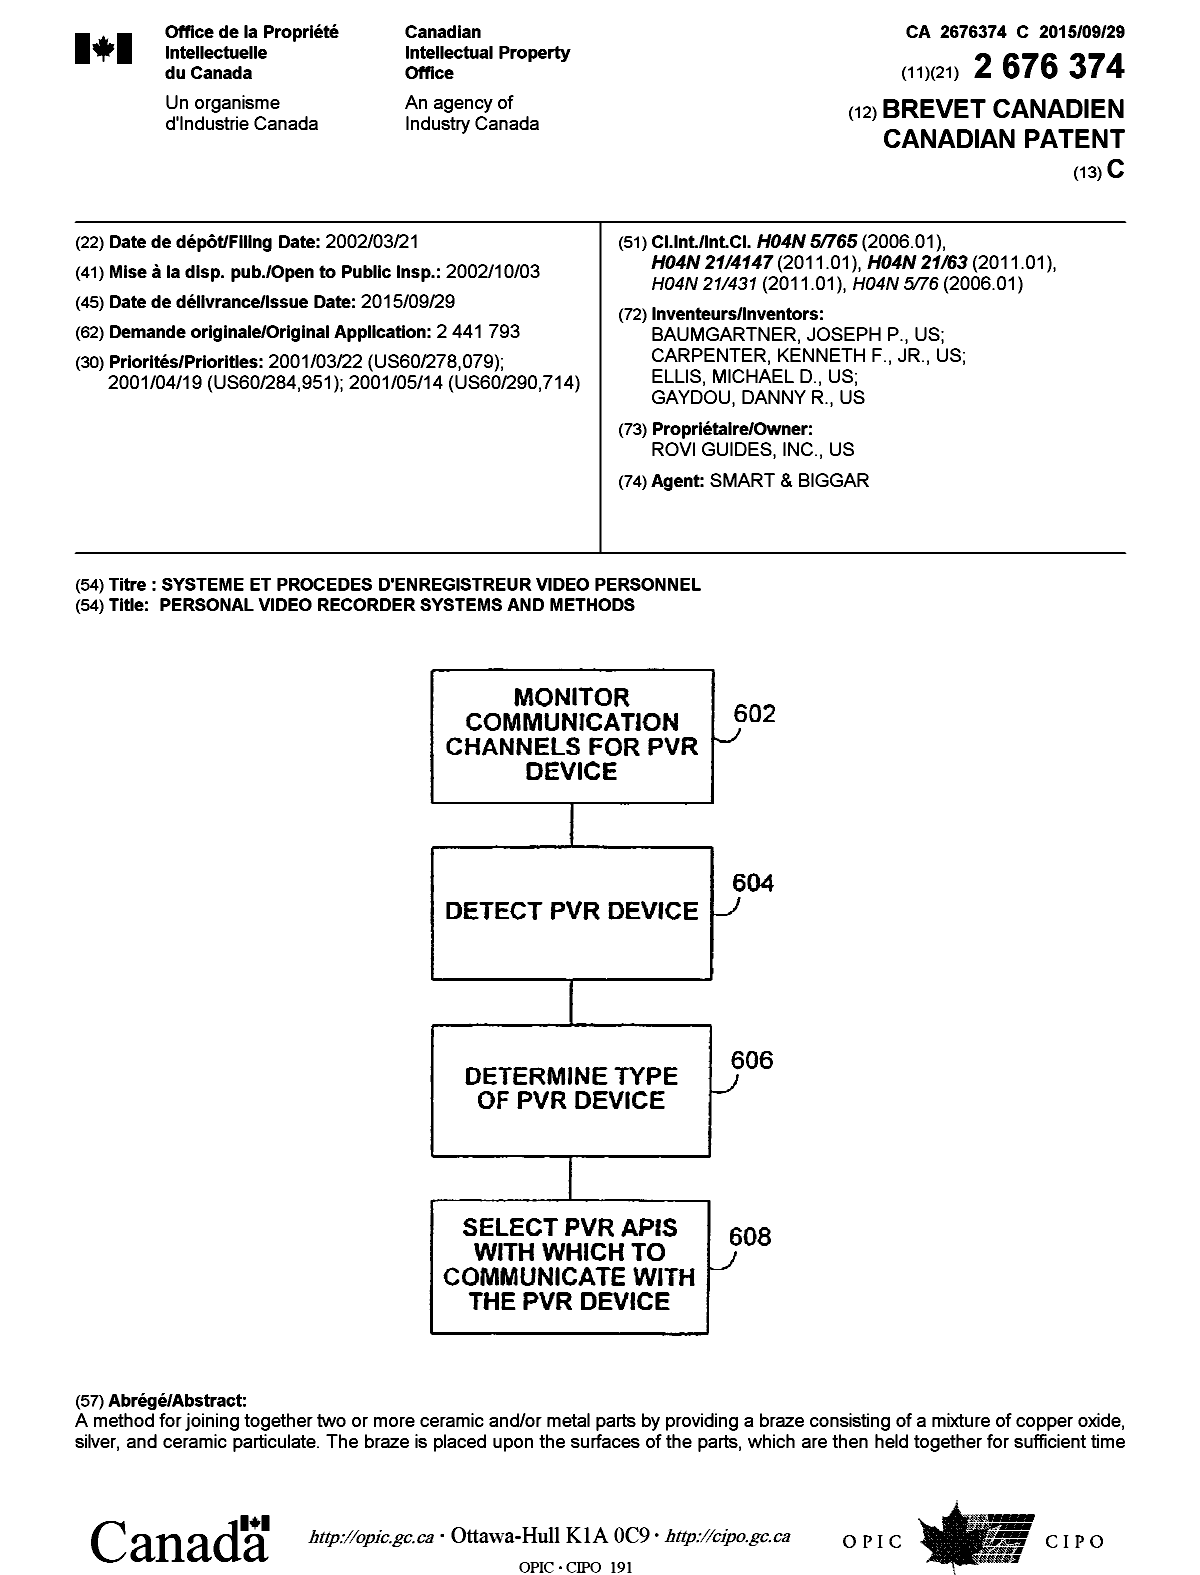 Document de brevet canadien 2676374. Page couverture 20150827. Image 1 de 2